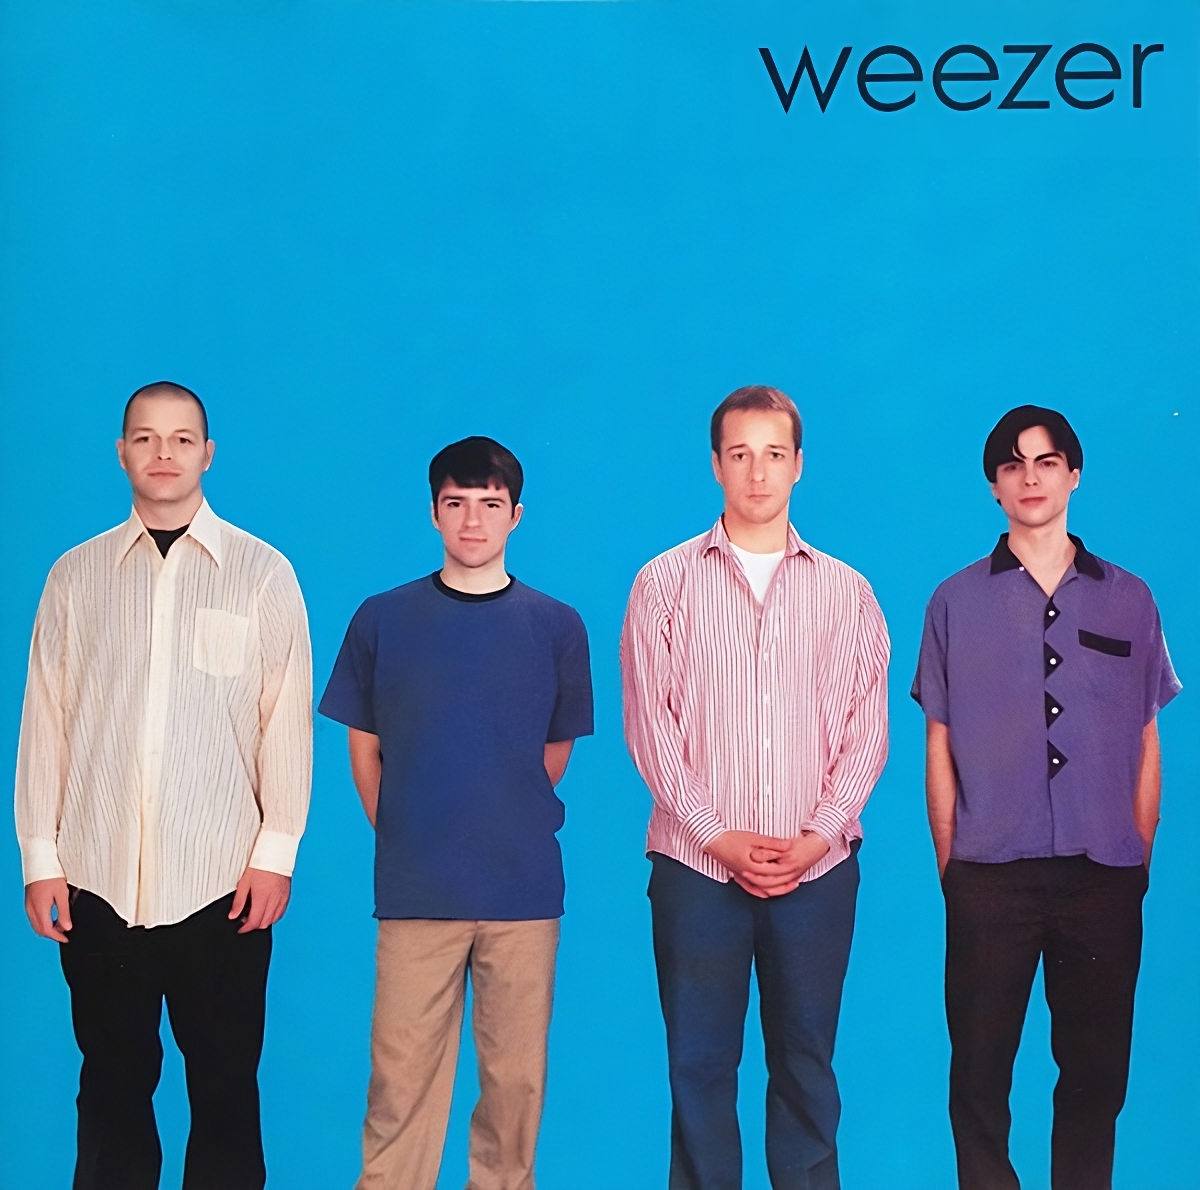 Weezer - Weezer (The Blue Album)